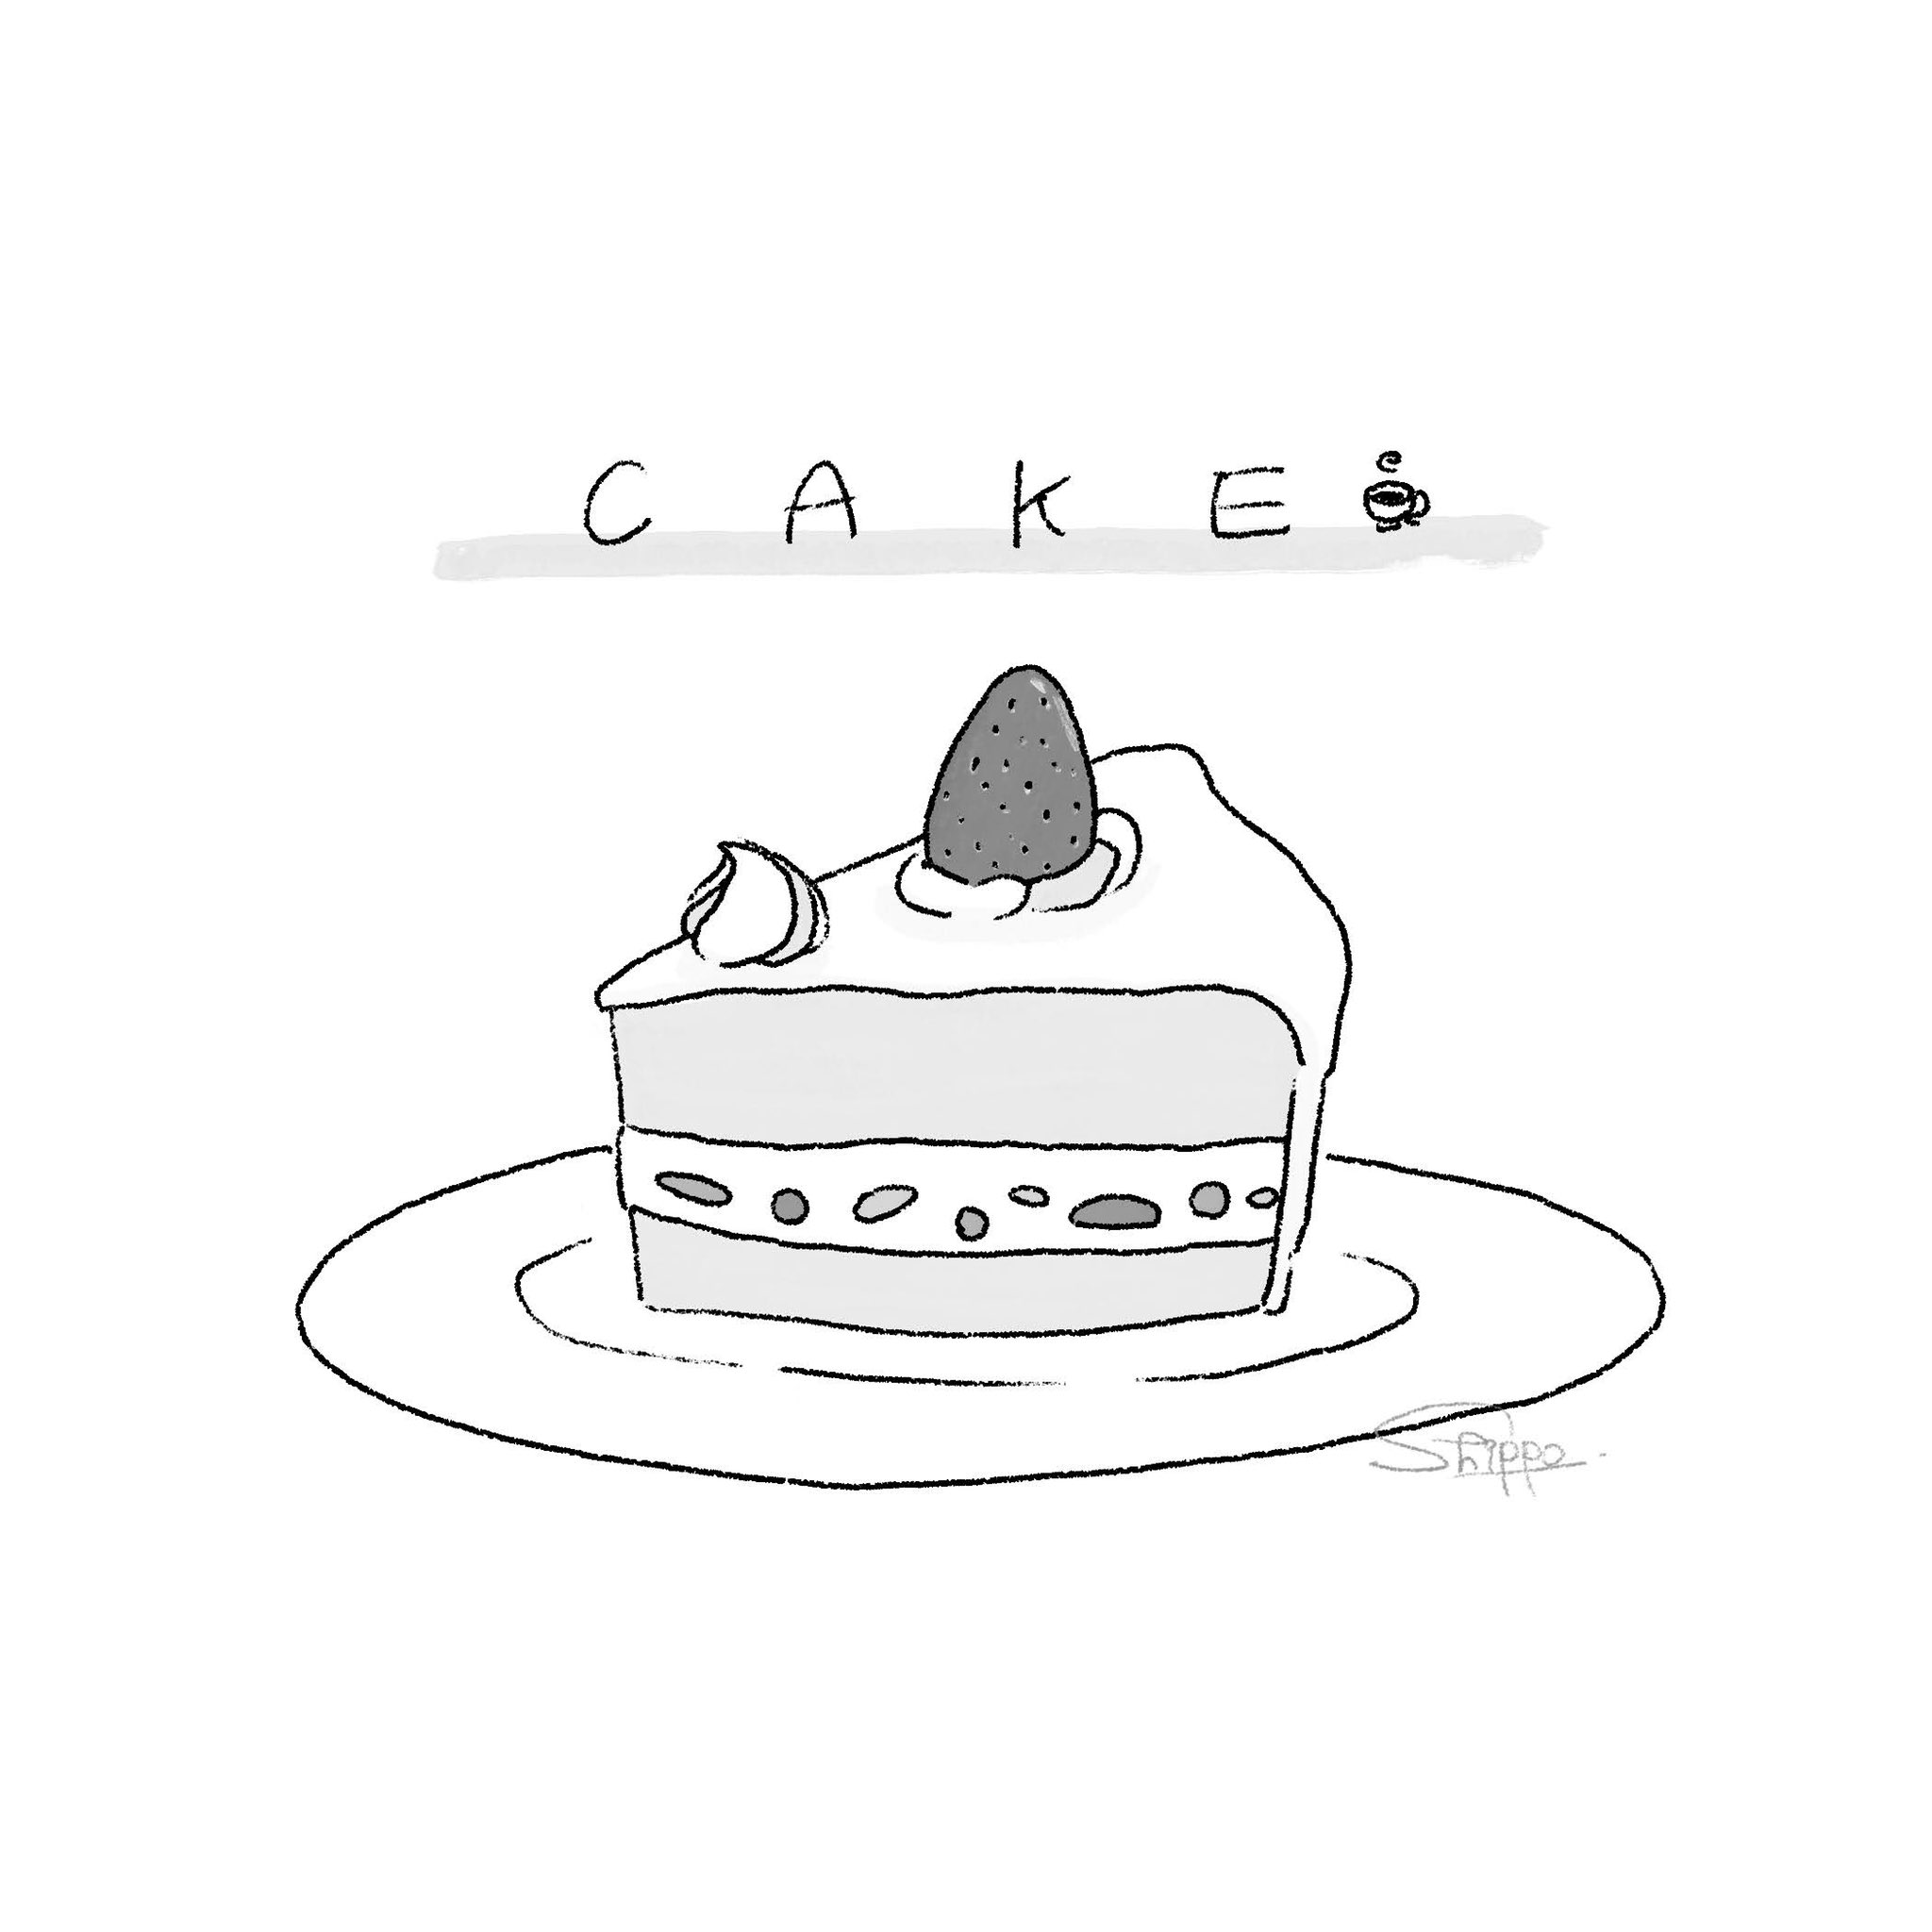 Shiro アイコン描きます 白黒でも美味しそうなスイーツ イラスト Illustration Sweets ケーキ Cake マカロン Macaron プリンアラモード プリン Pudding 前垢で描いたやつ こうして並べると線の太さが全然違う T Co Dcpodyj8xn Twitter